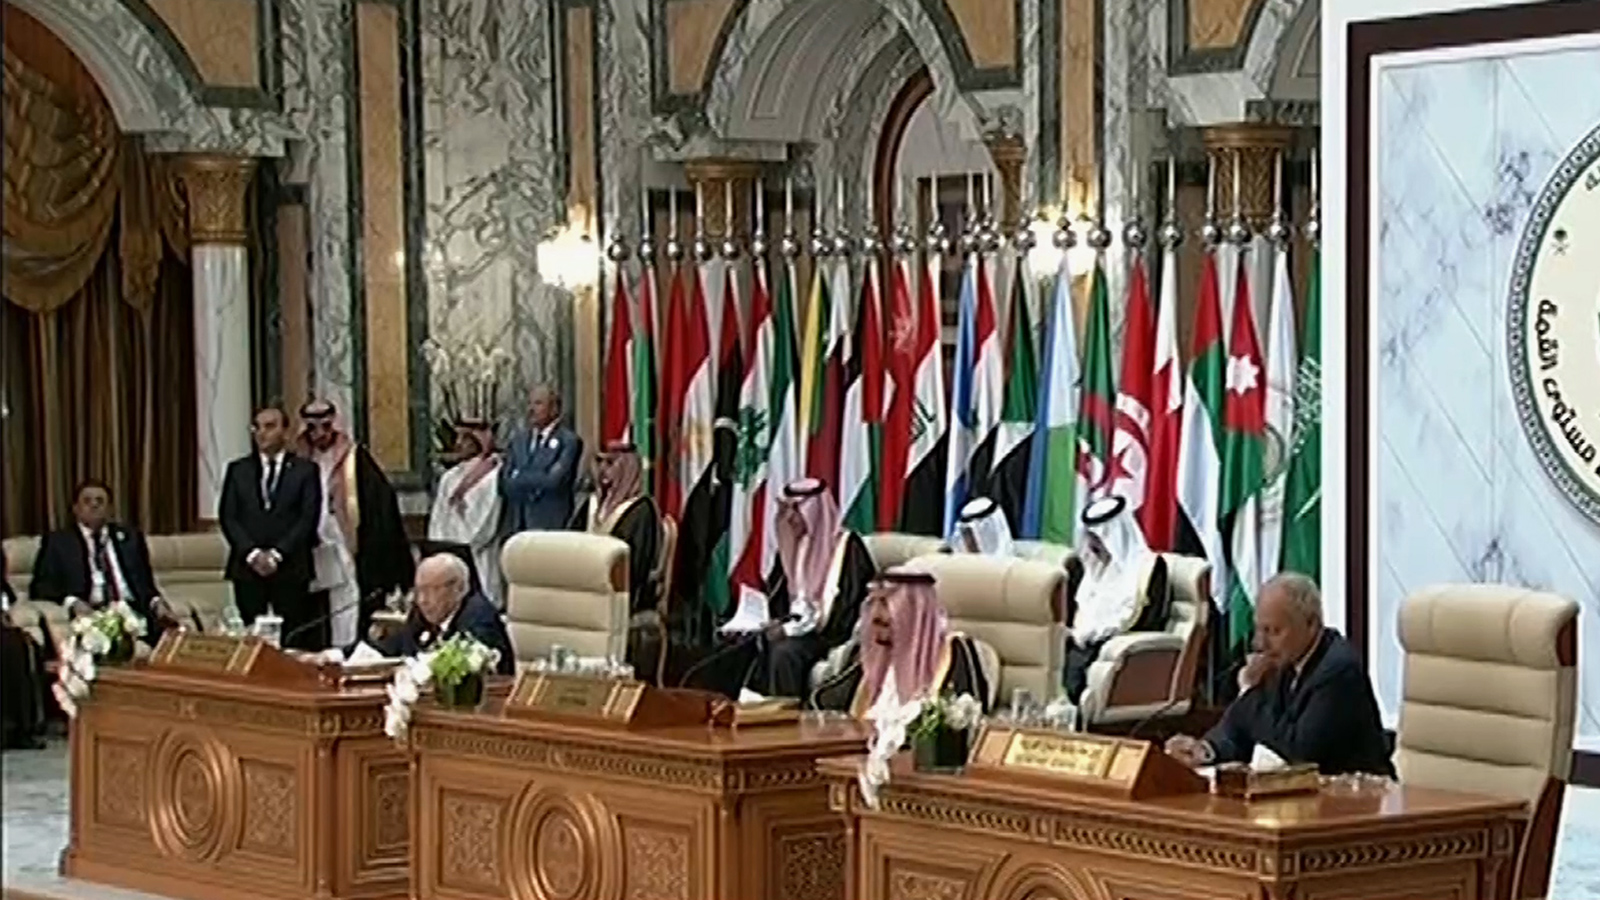 القمة العربية الطارئة انعقدت بطلب من السعودية في سياق التصعيد الذي تشهده المنطقة (الجزيرة)